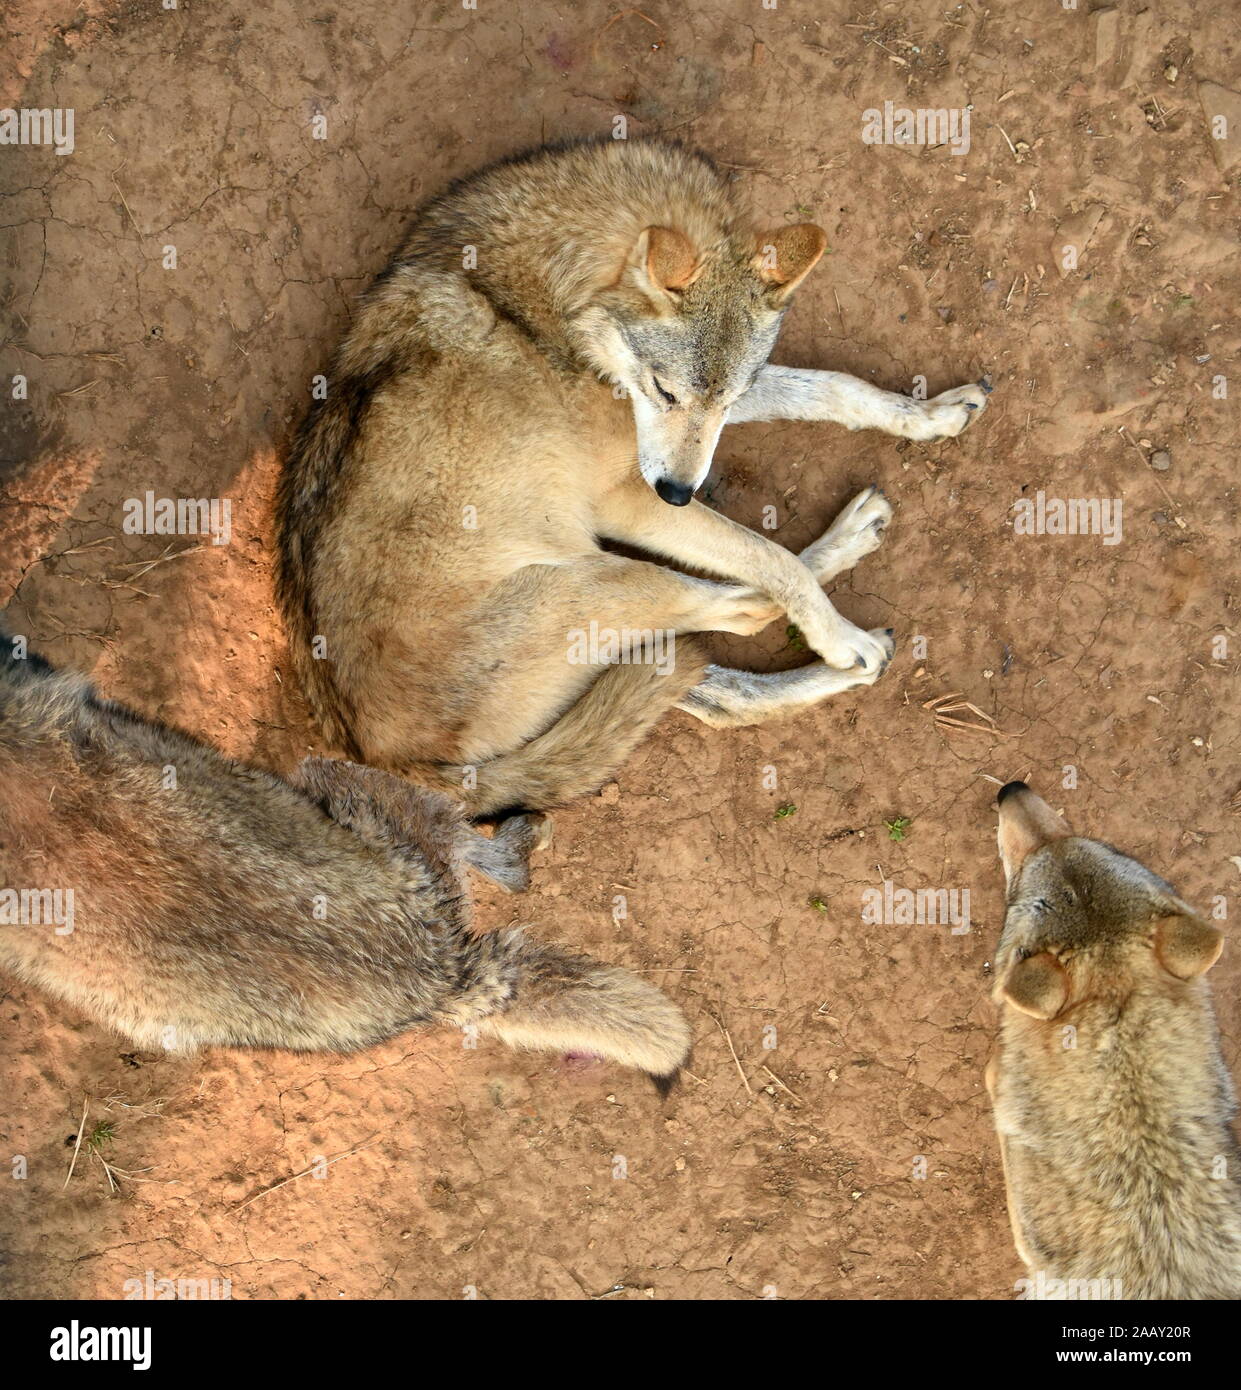 En regardant trois loups jouant en position allongée sur le sol Banque D'Images